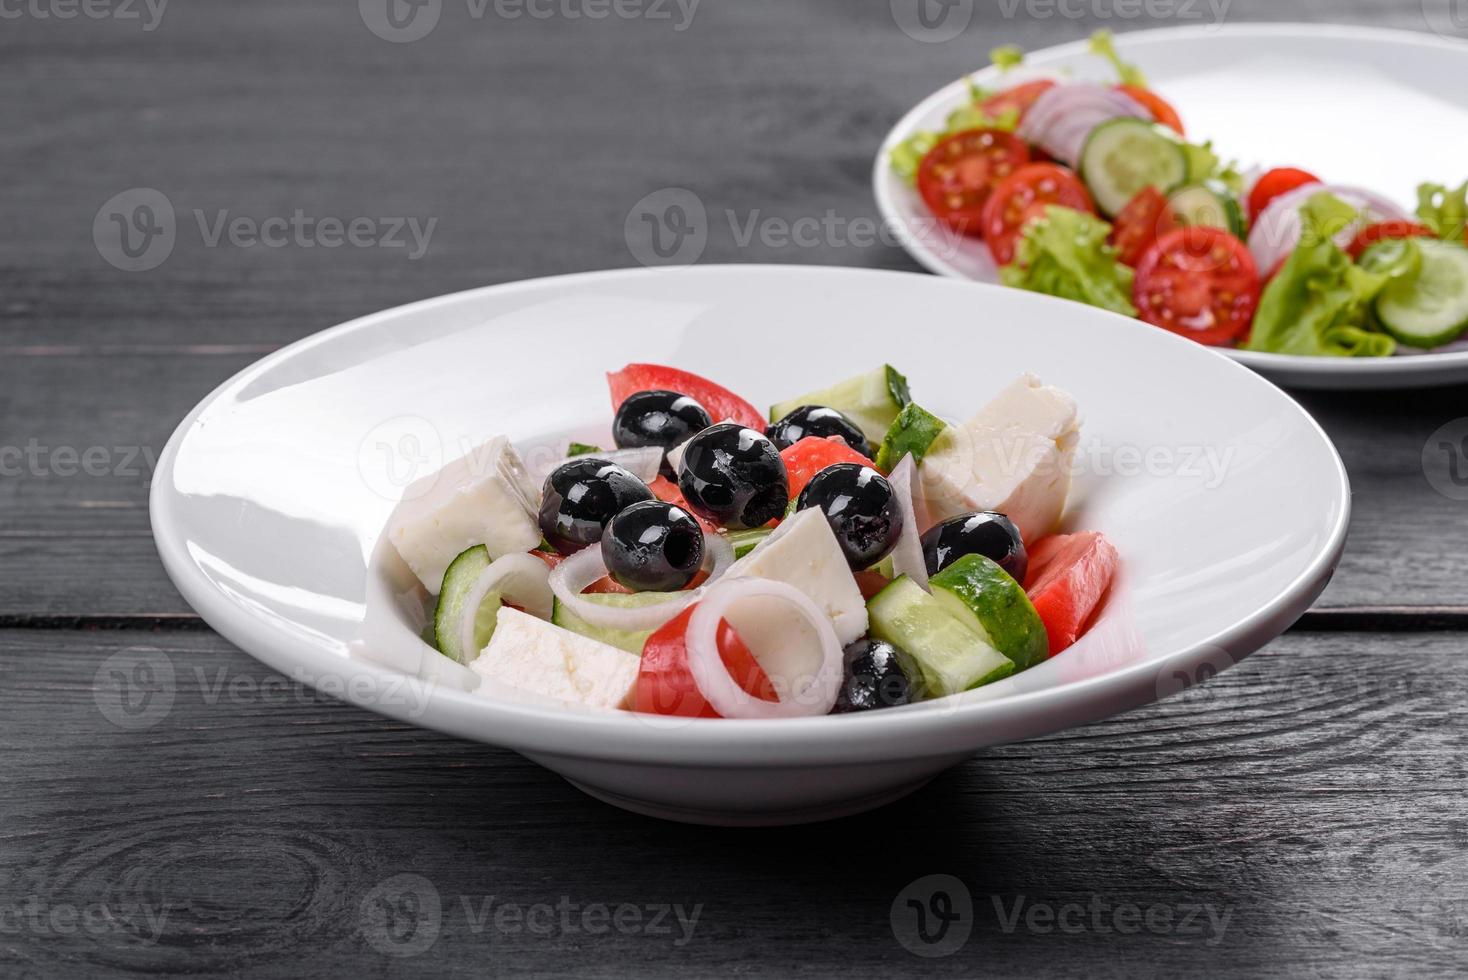 délicieuse salade grecque fraîche avec tomate, concombre, oignons et olives à l'huile d'olive photo